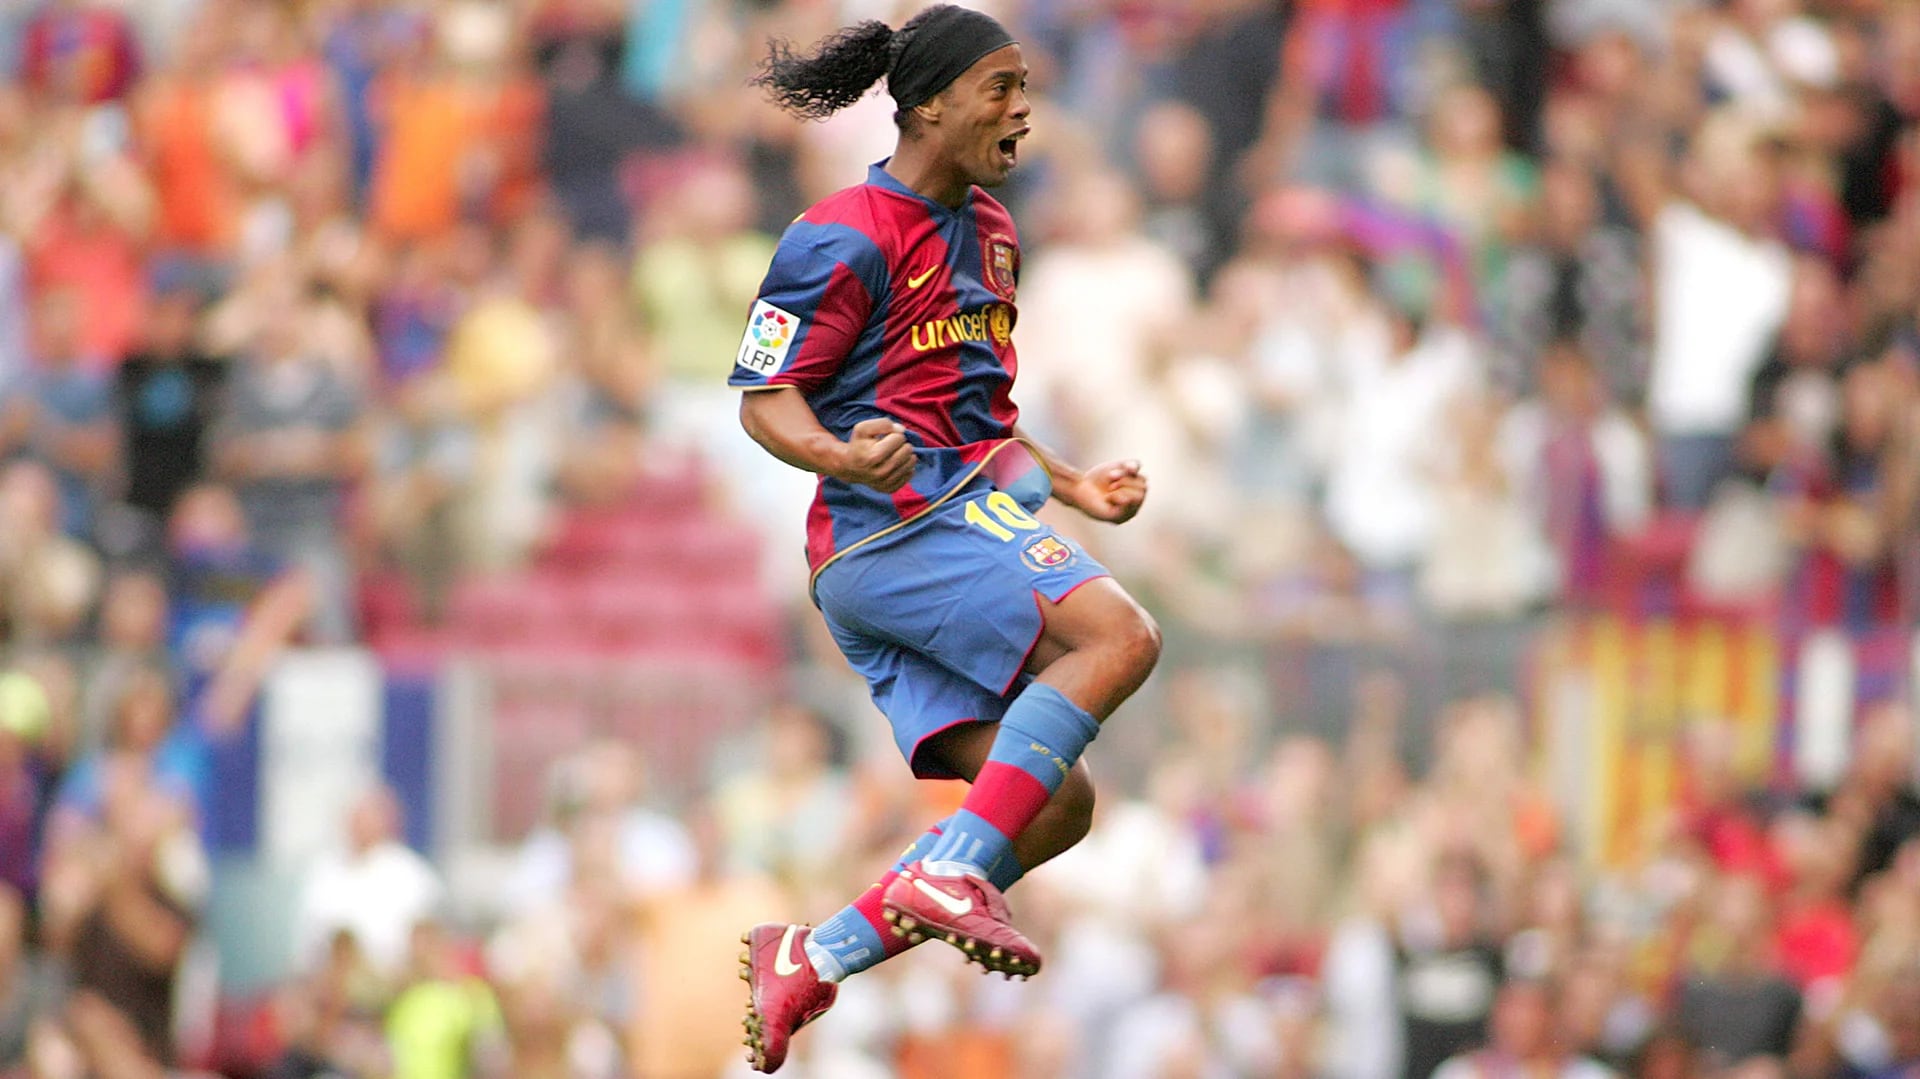 El PSG vendió a Ronaldinho al Barcelona en lugar del Real Madrid (Shutterstock)